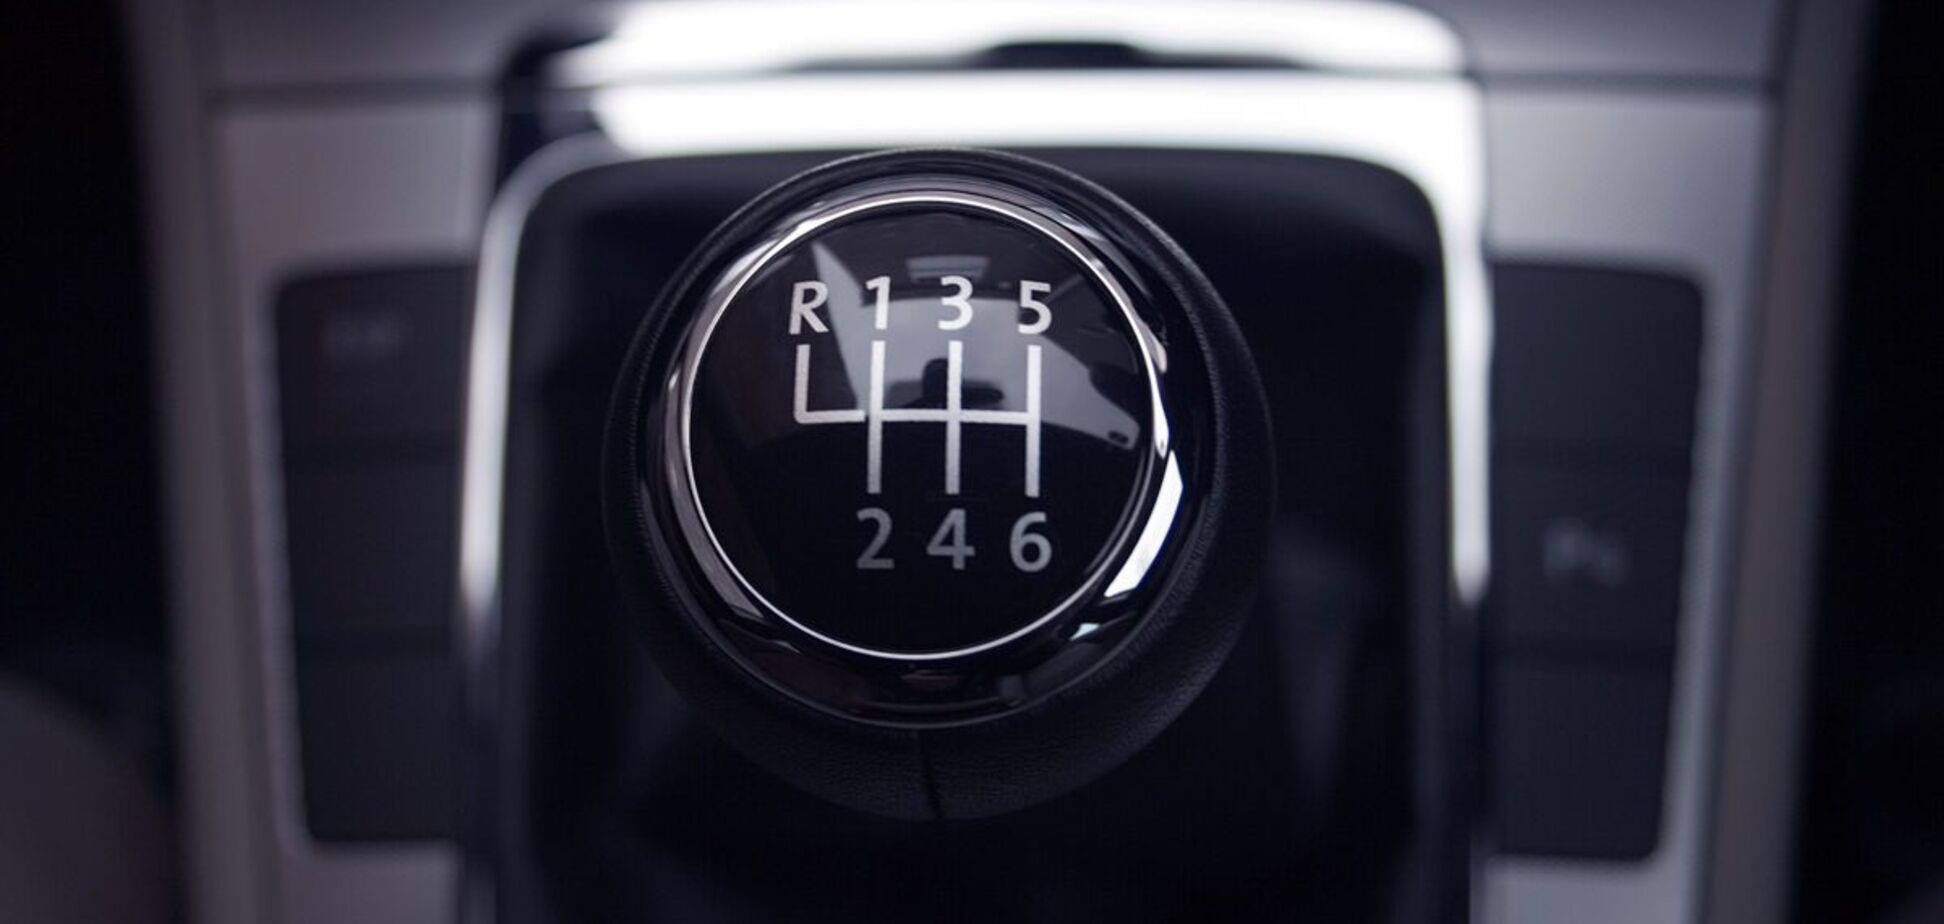 Введение нормы Евро-7 для автомобилей поставит крест на механических коробках передач